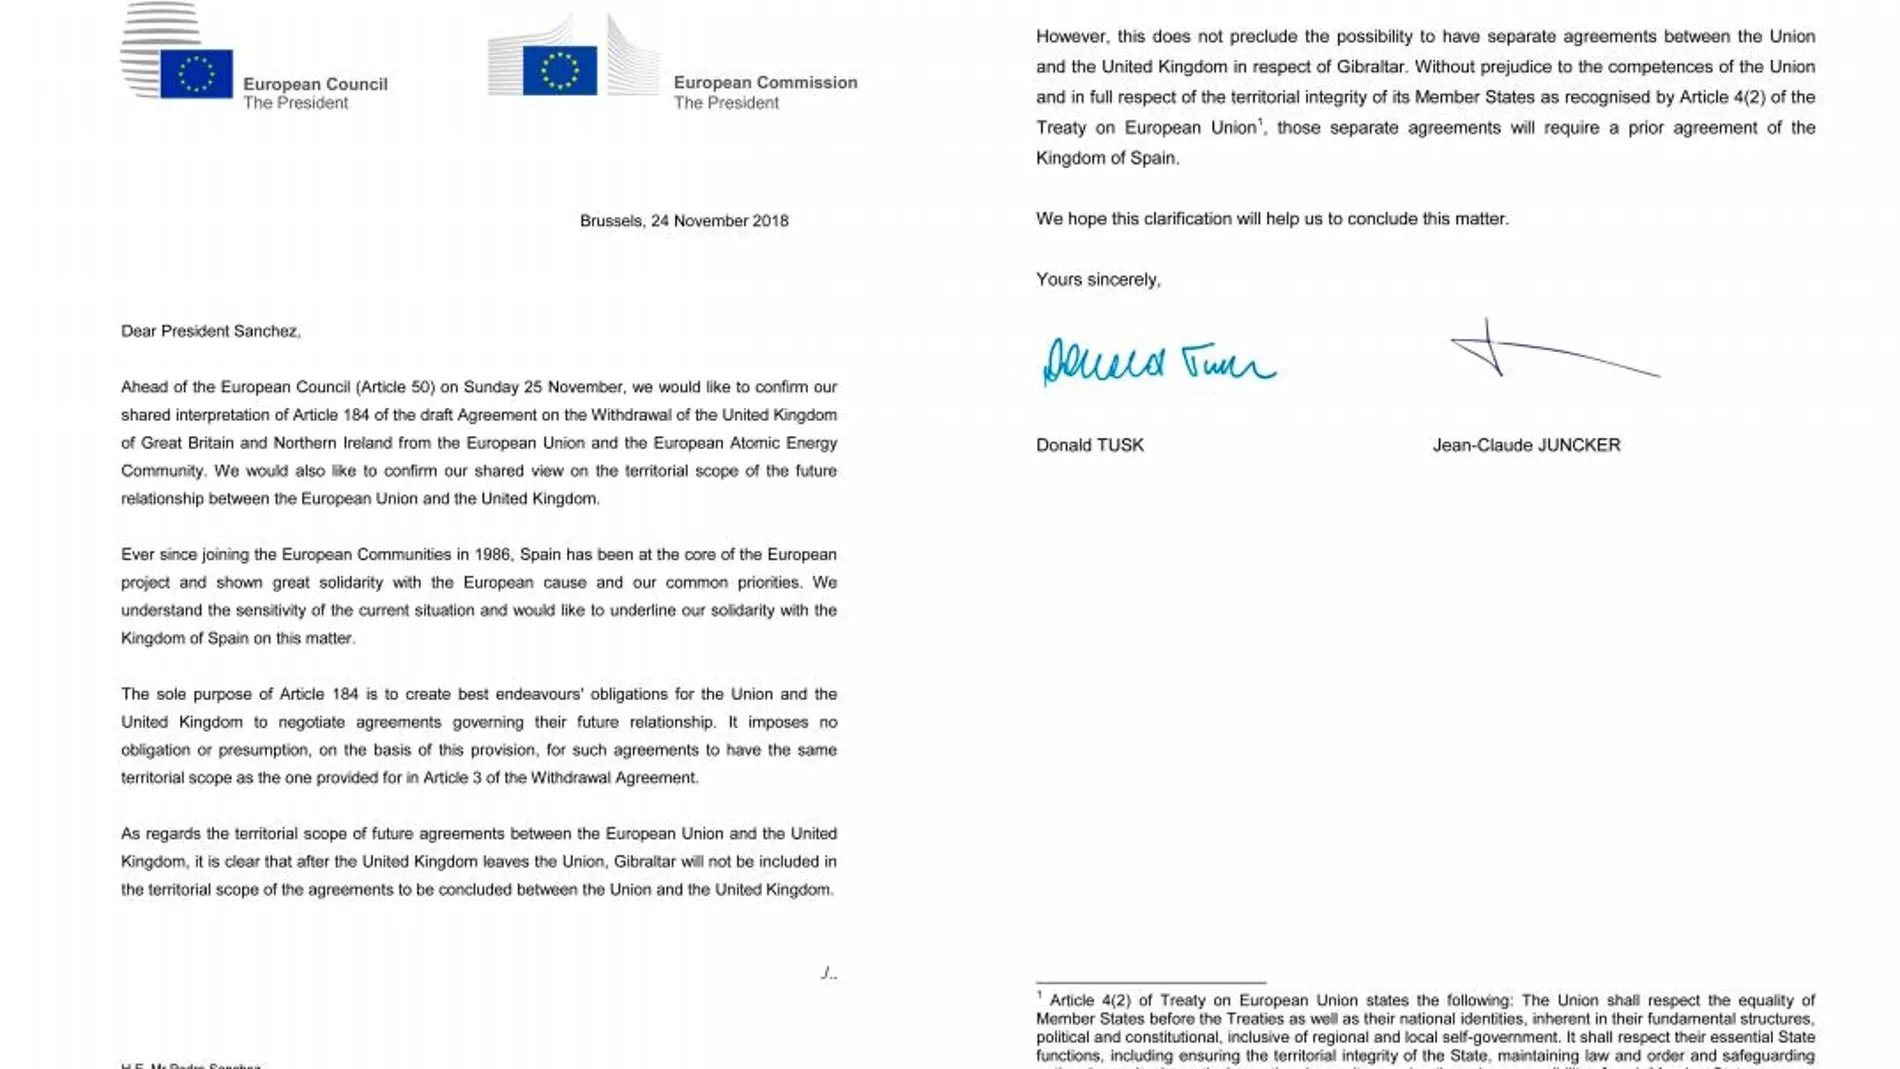 Carta de los presidentes de la Comisión y el Consejo Europeo, Jean-Claude Junker y Donald Tusk.